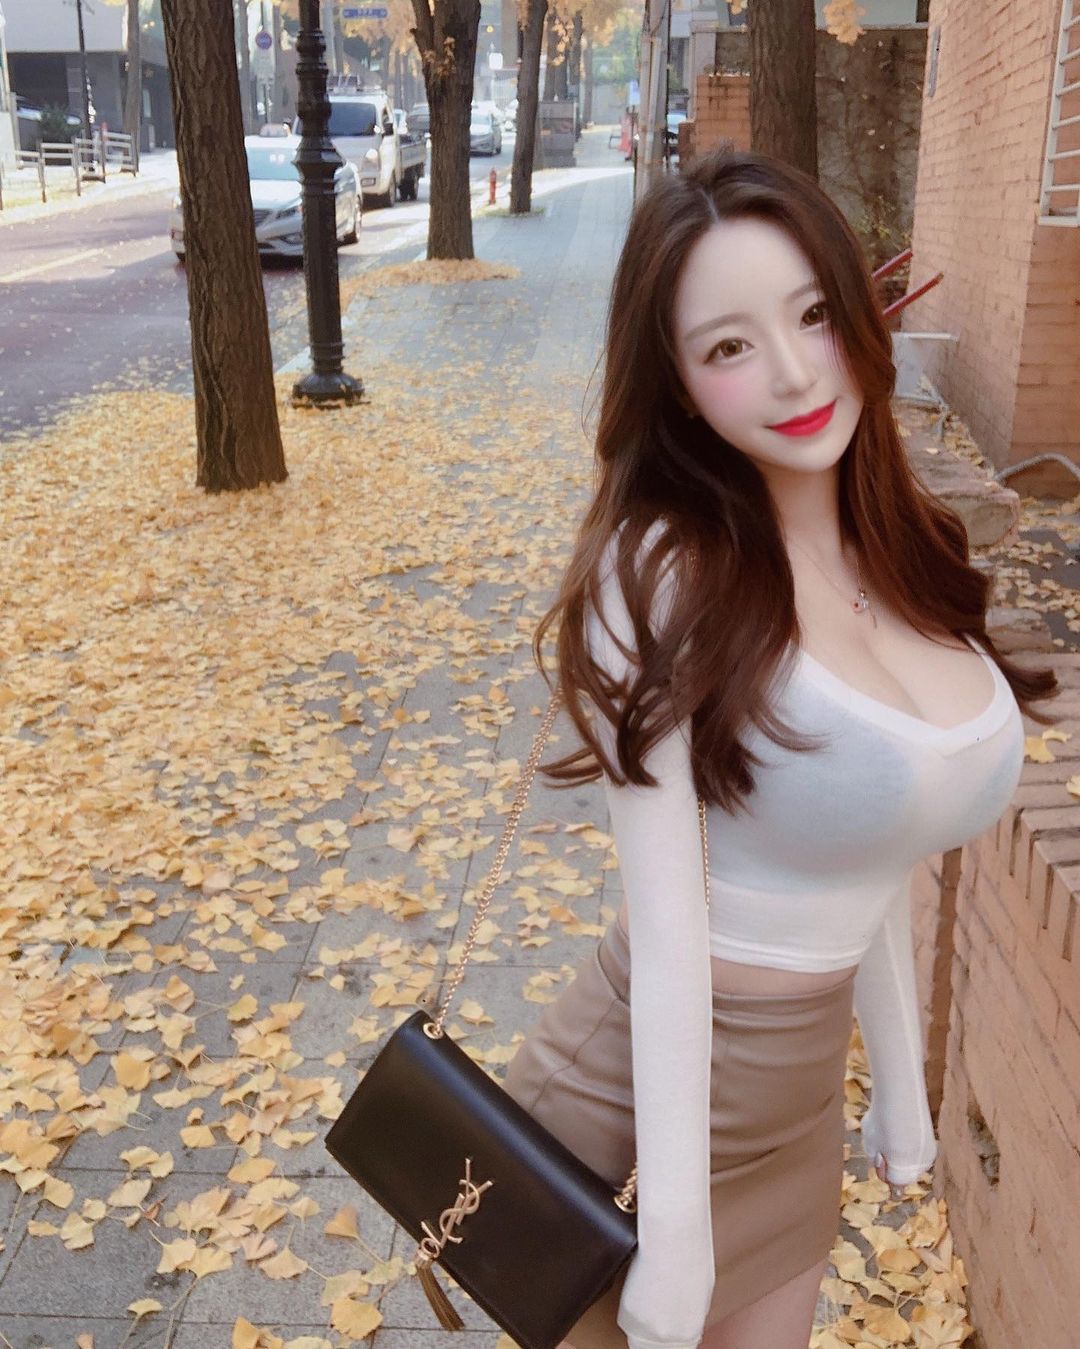 Người đẹp Hàn Quốc che mặt cũng thấy nóng bỏng nhờ vòng 1 "khủng", body "lượn sóng" - 6